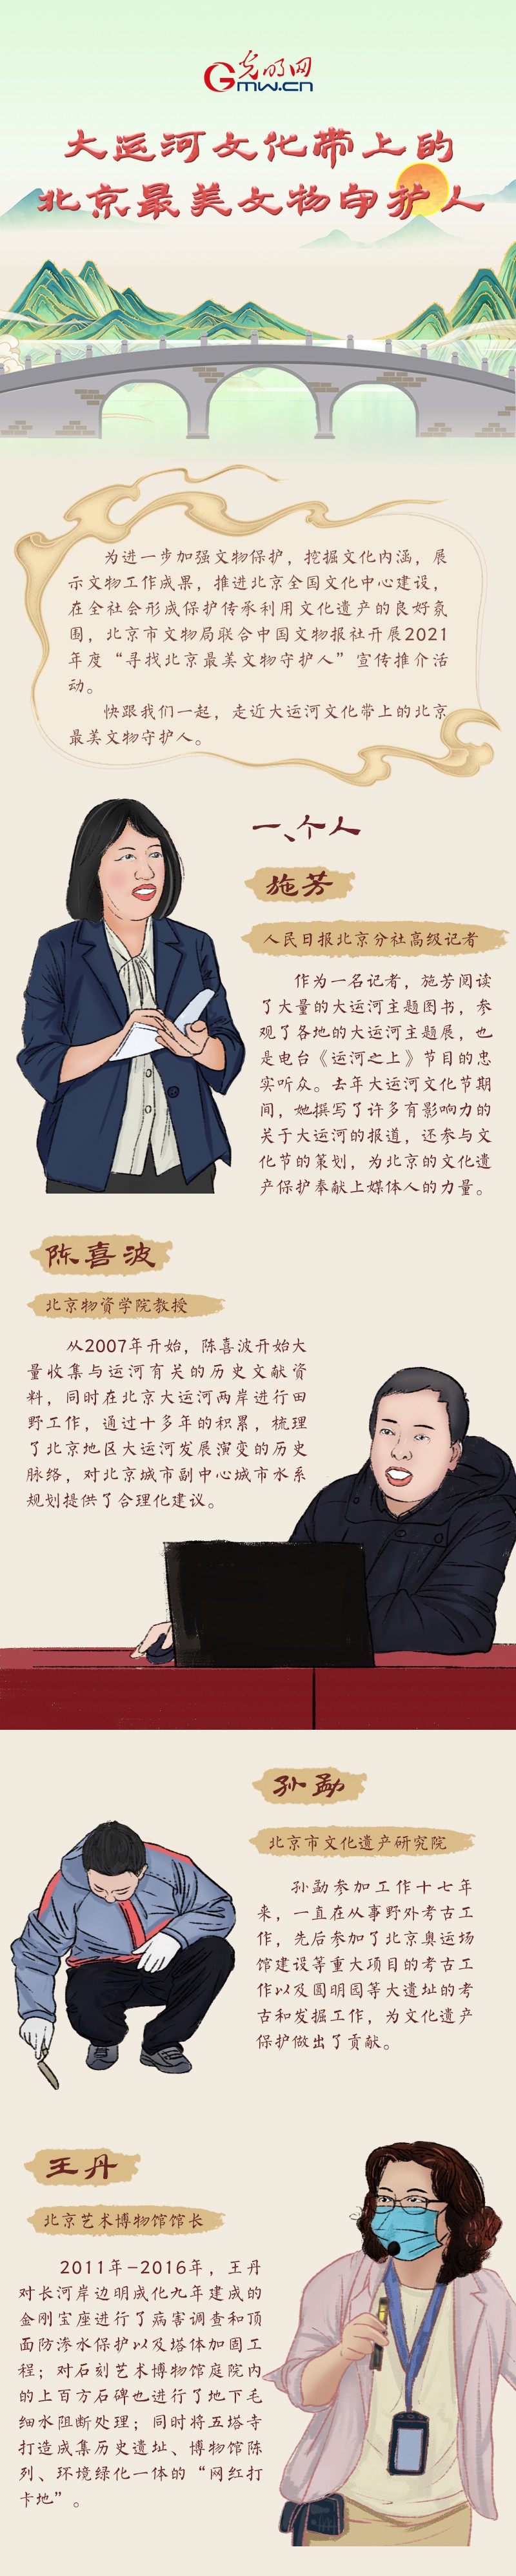 【手绘长图】大运河文化带上的北京最美文物守护人